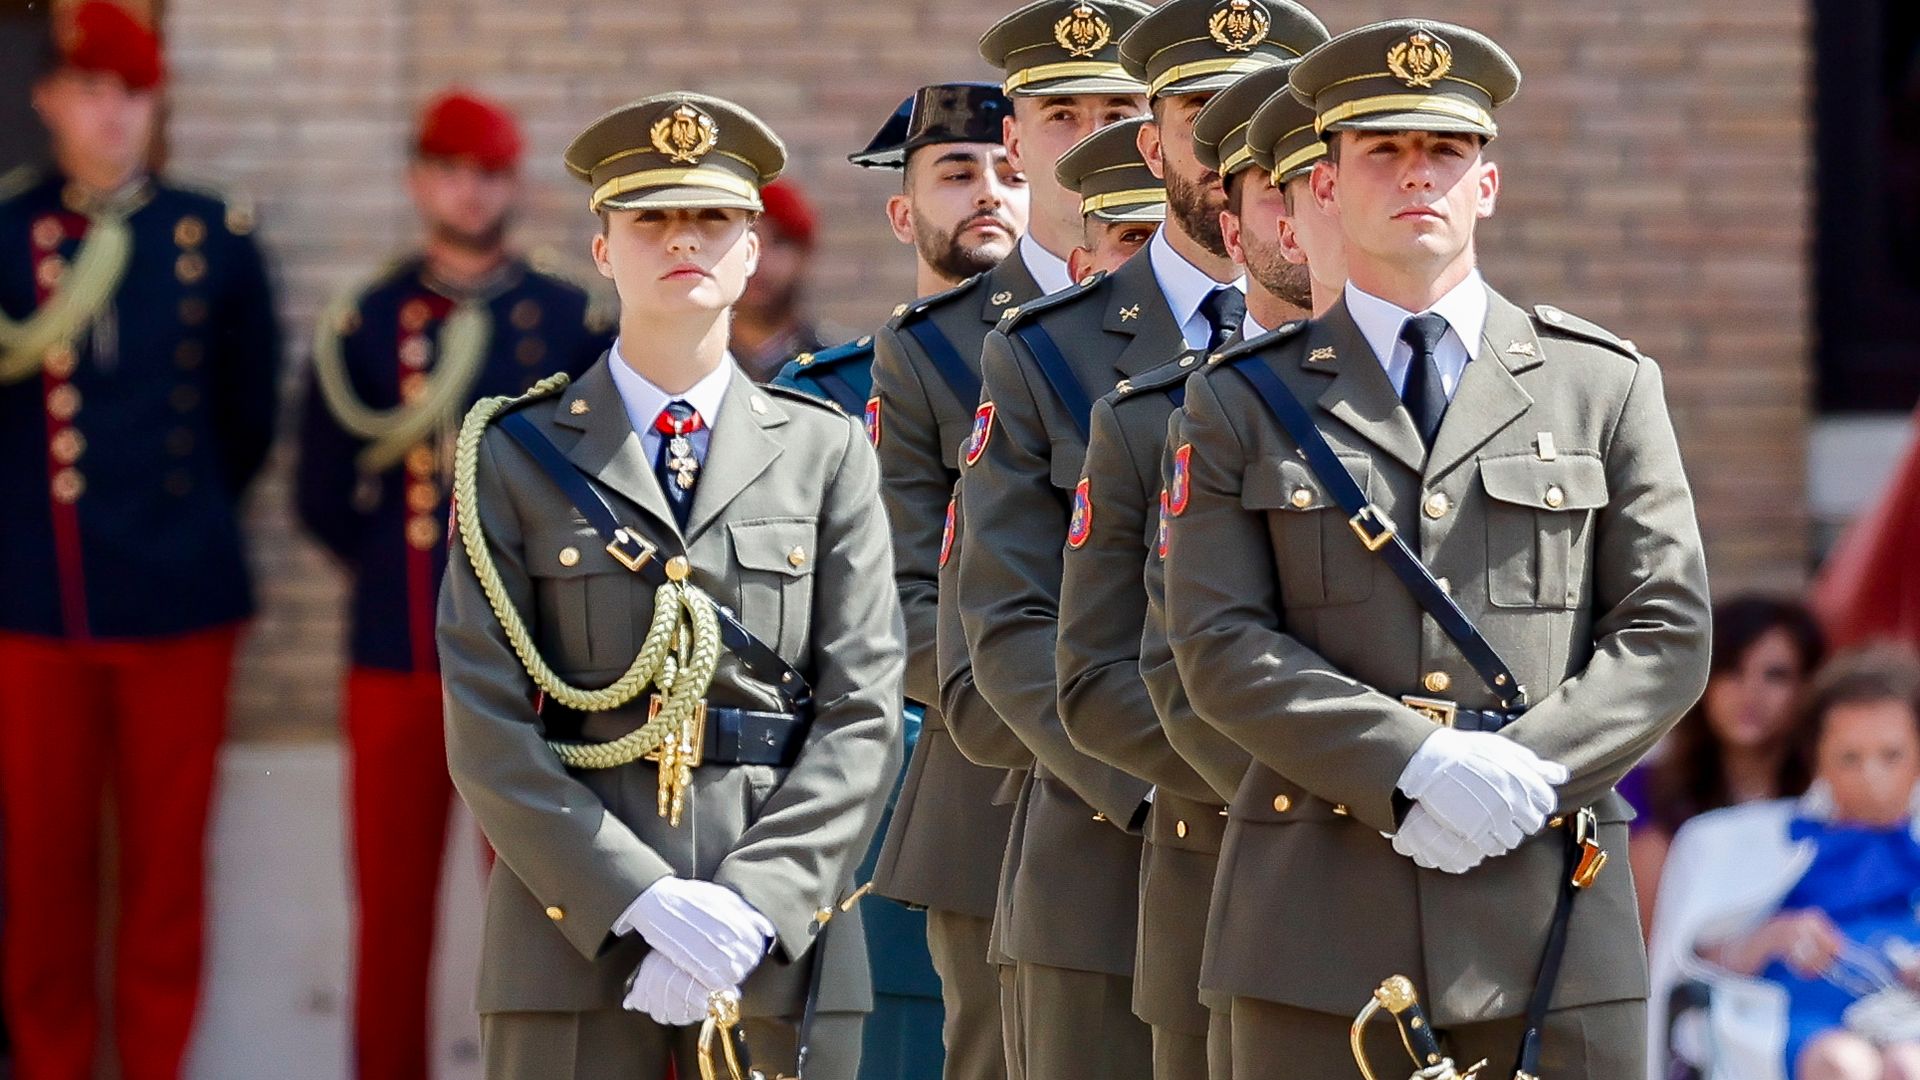 La princesa de Asturias, en la entrega de su despacho de alférez cadete, luce por primera vez gorra de plato